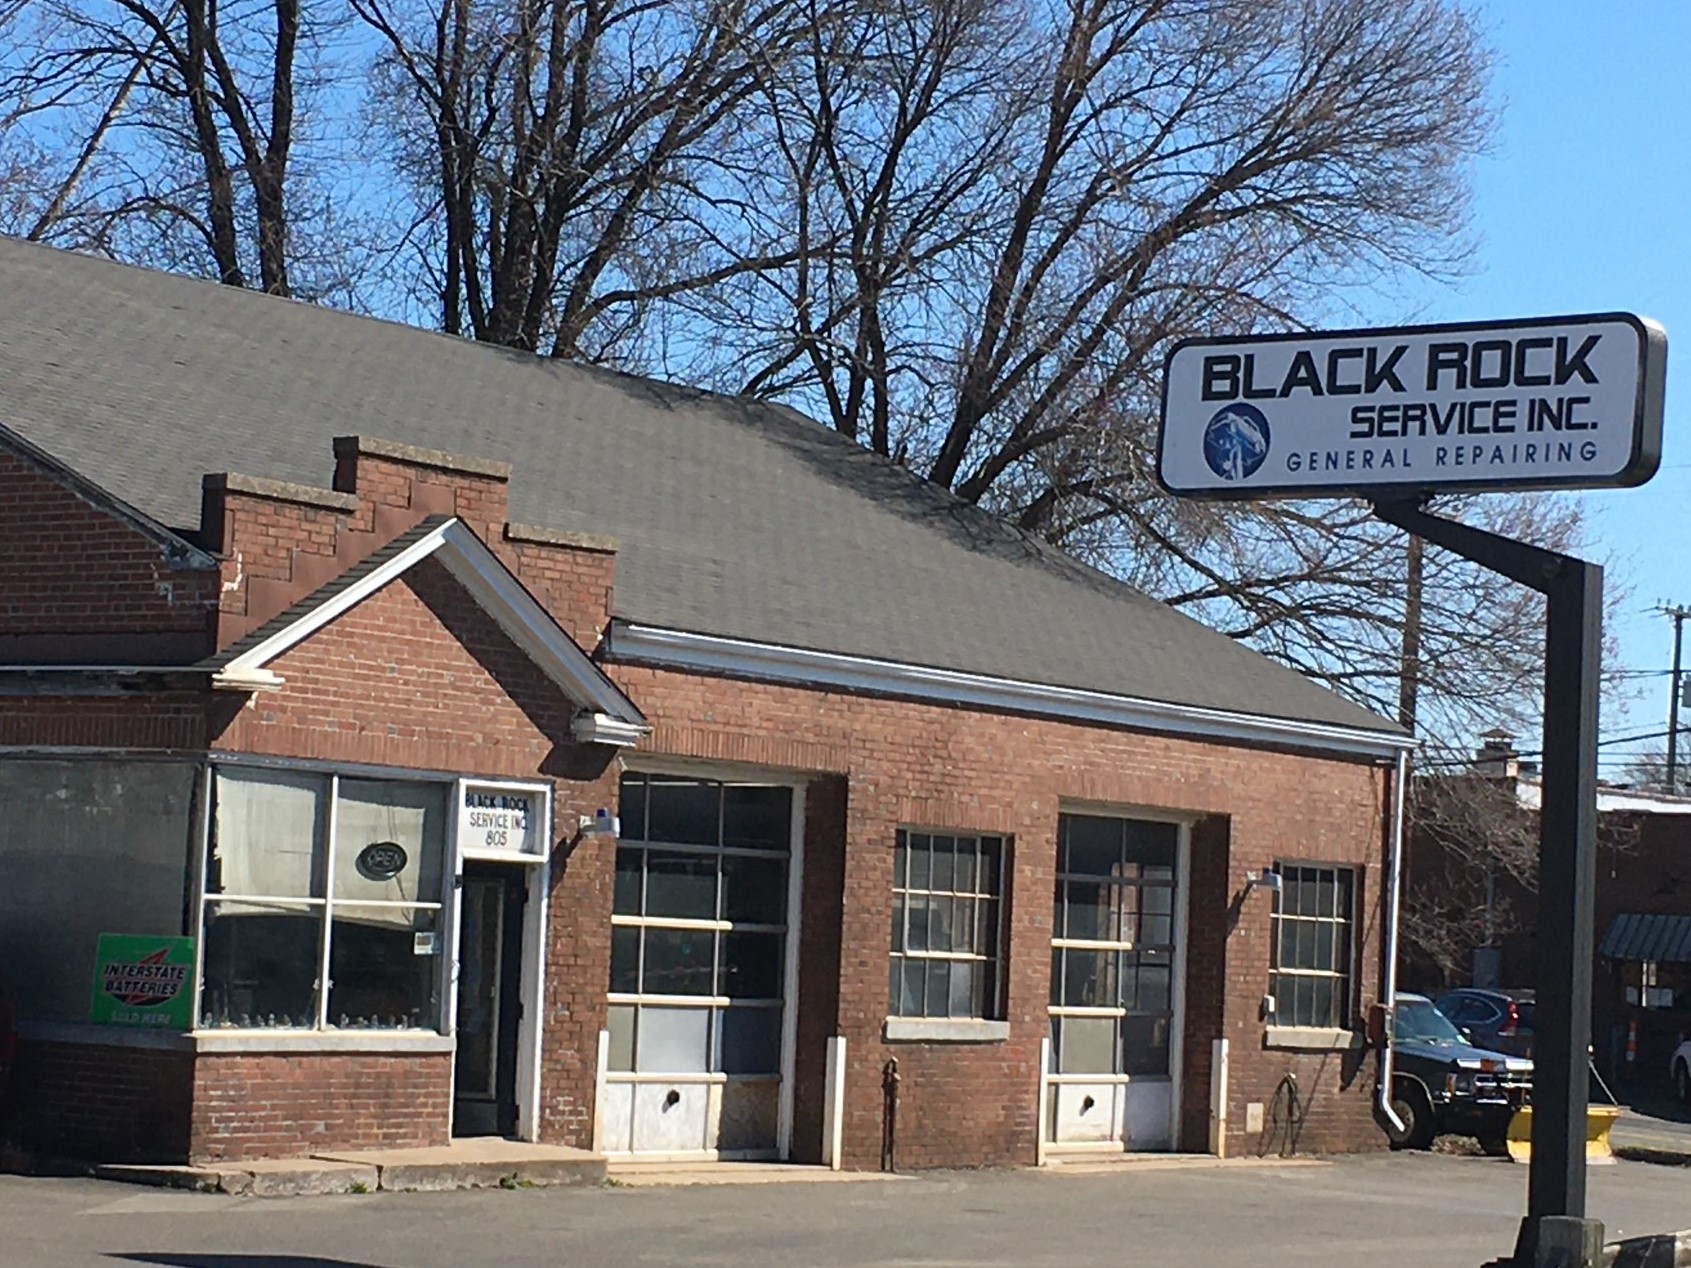 Black Rock Services Inc 805 Farmington Ave, Kensington Connecticut 06037